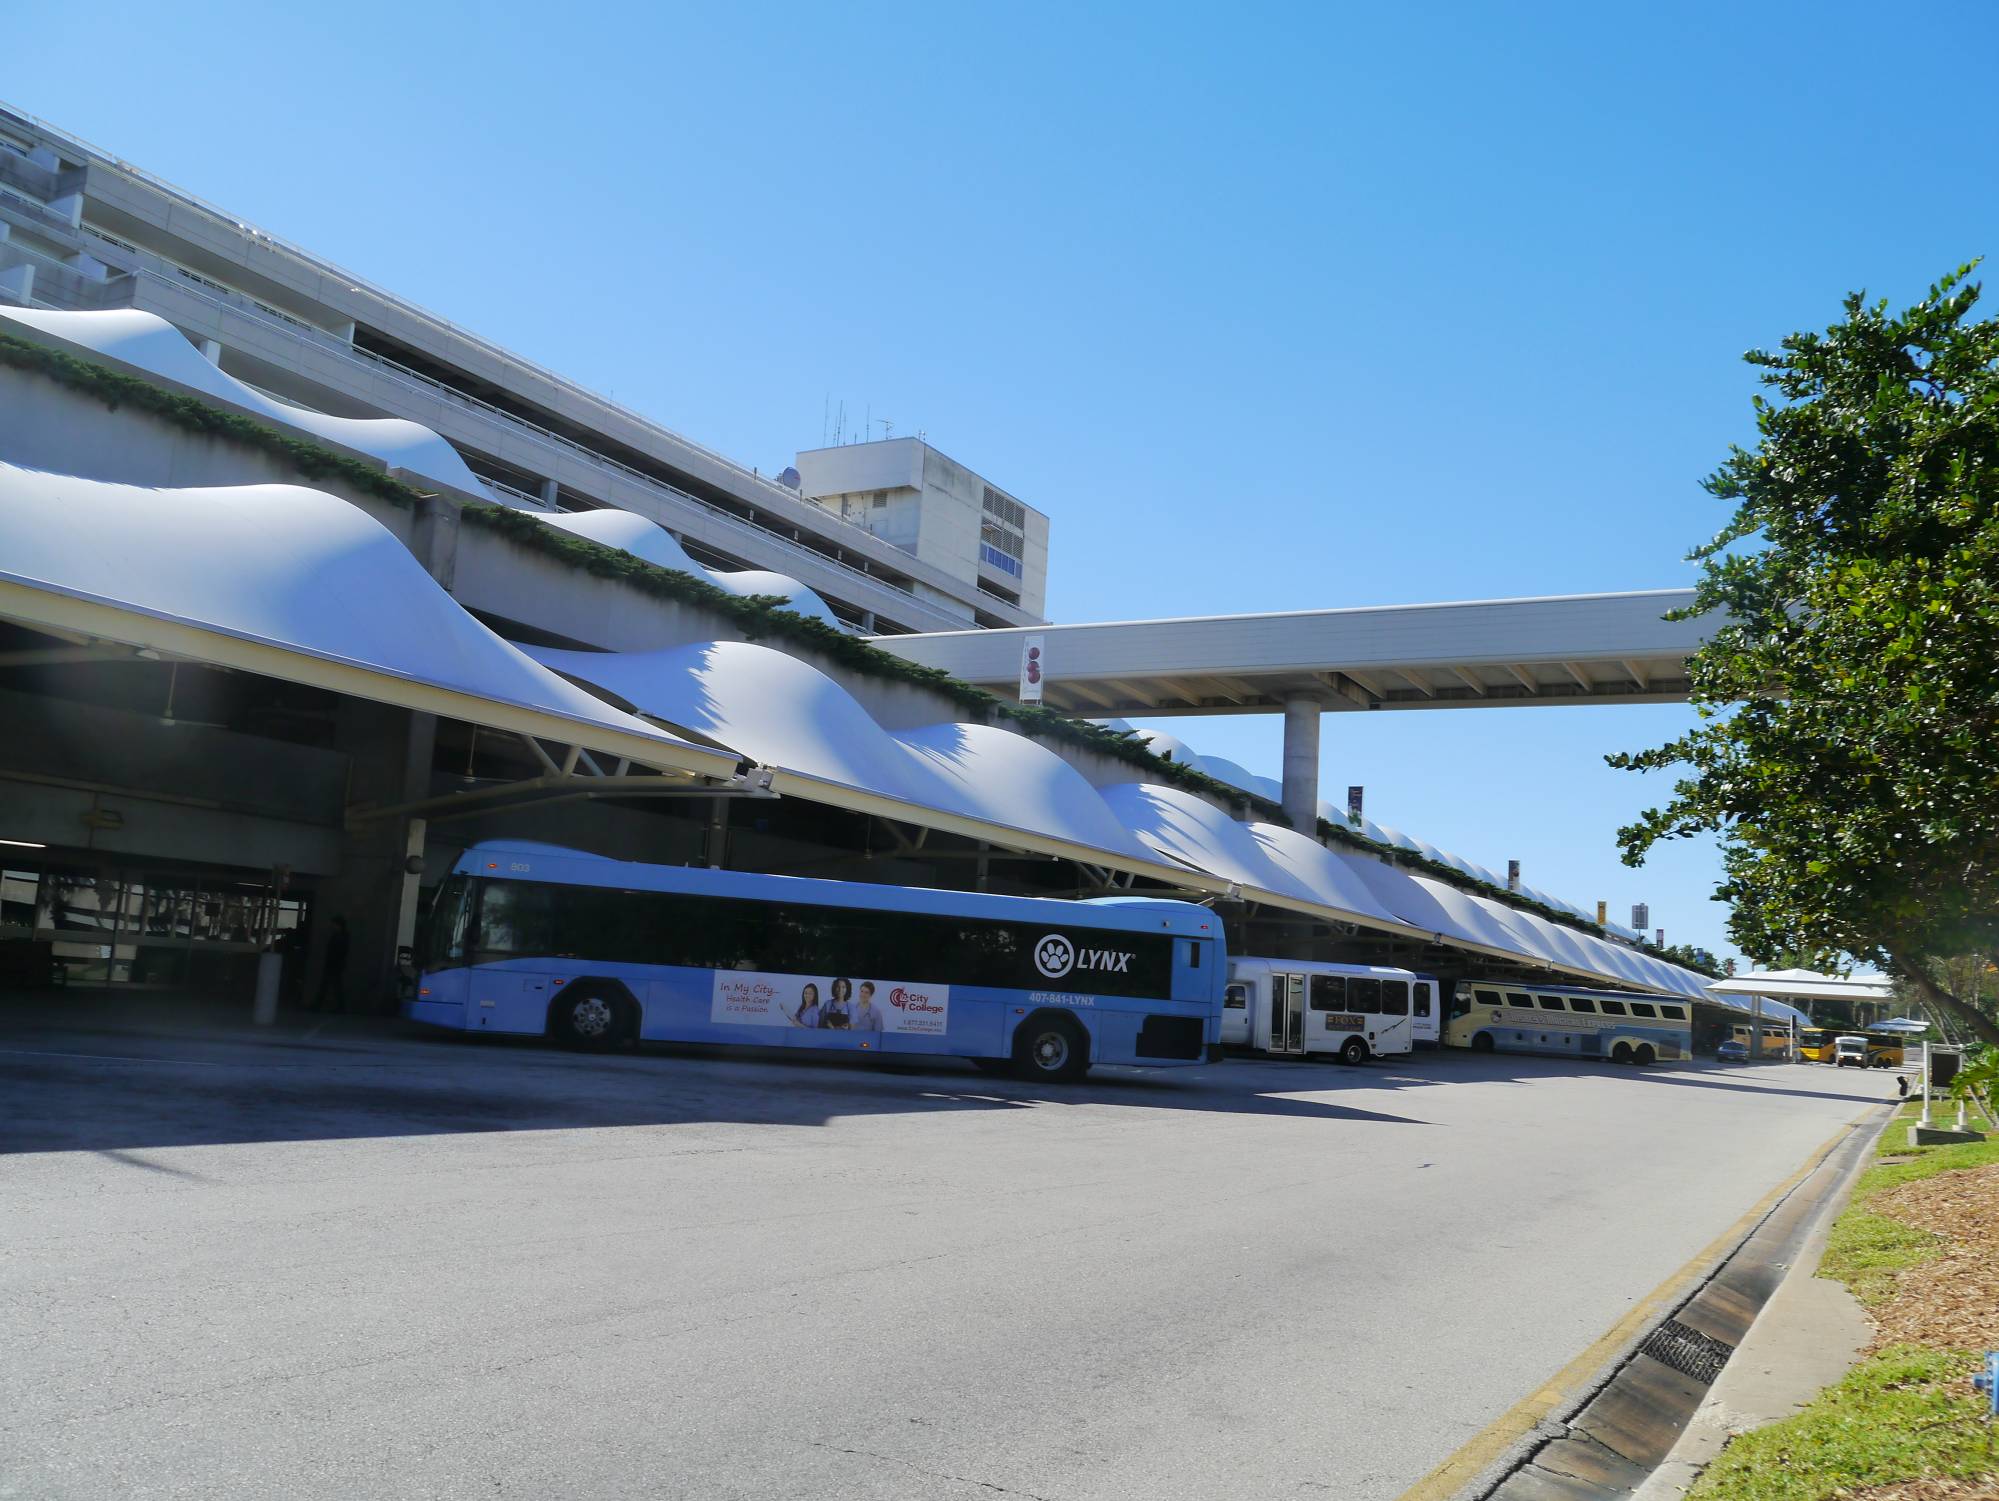 Orlando International Airport - bus stop